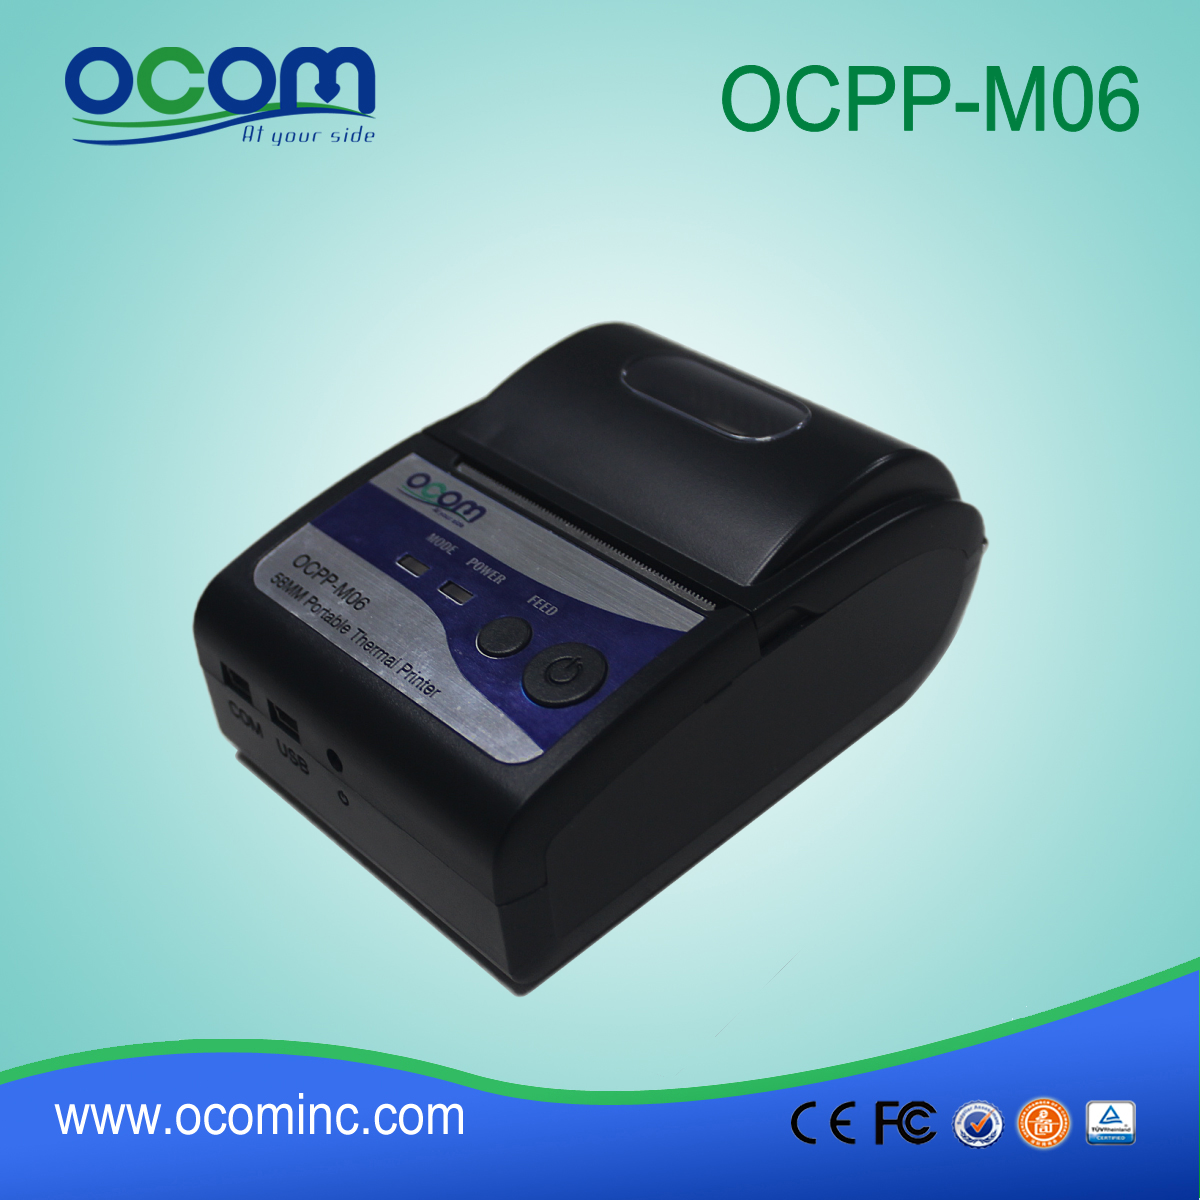 OCPP-M06: OCOM vendedora caliente de impresora barata bluetooth 58mm, 58mm impresora bluetooth